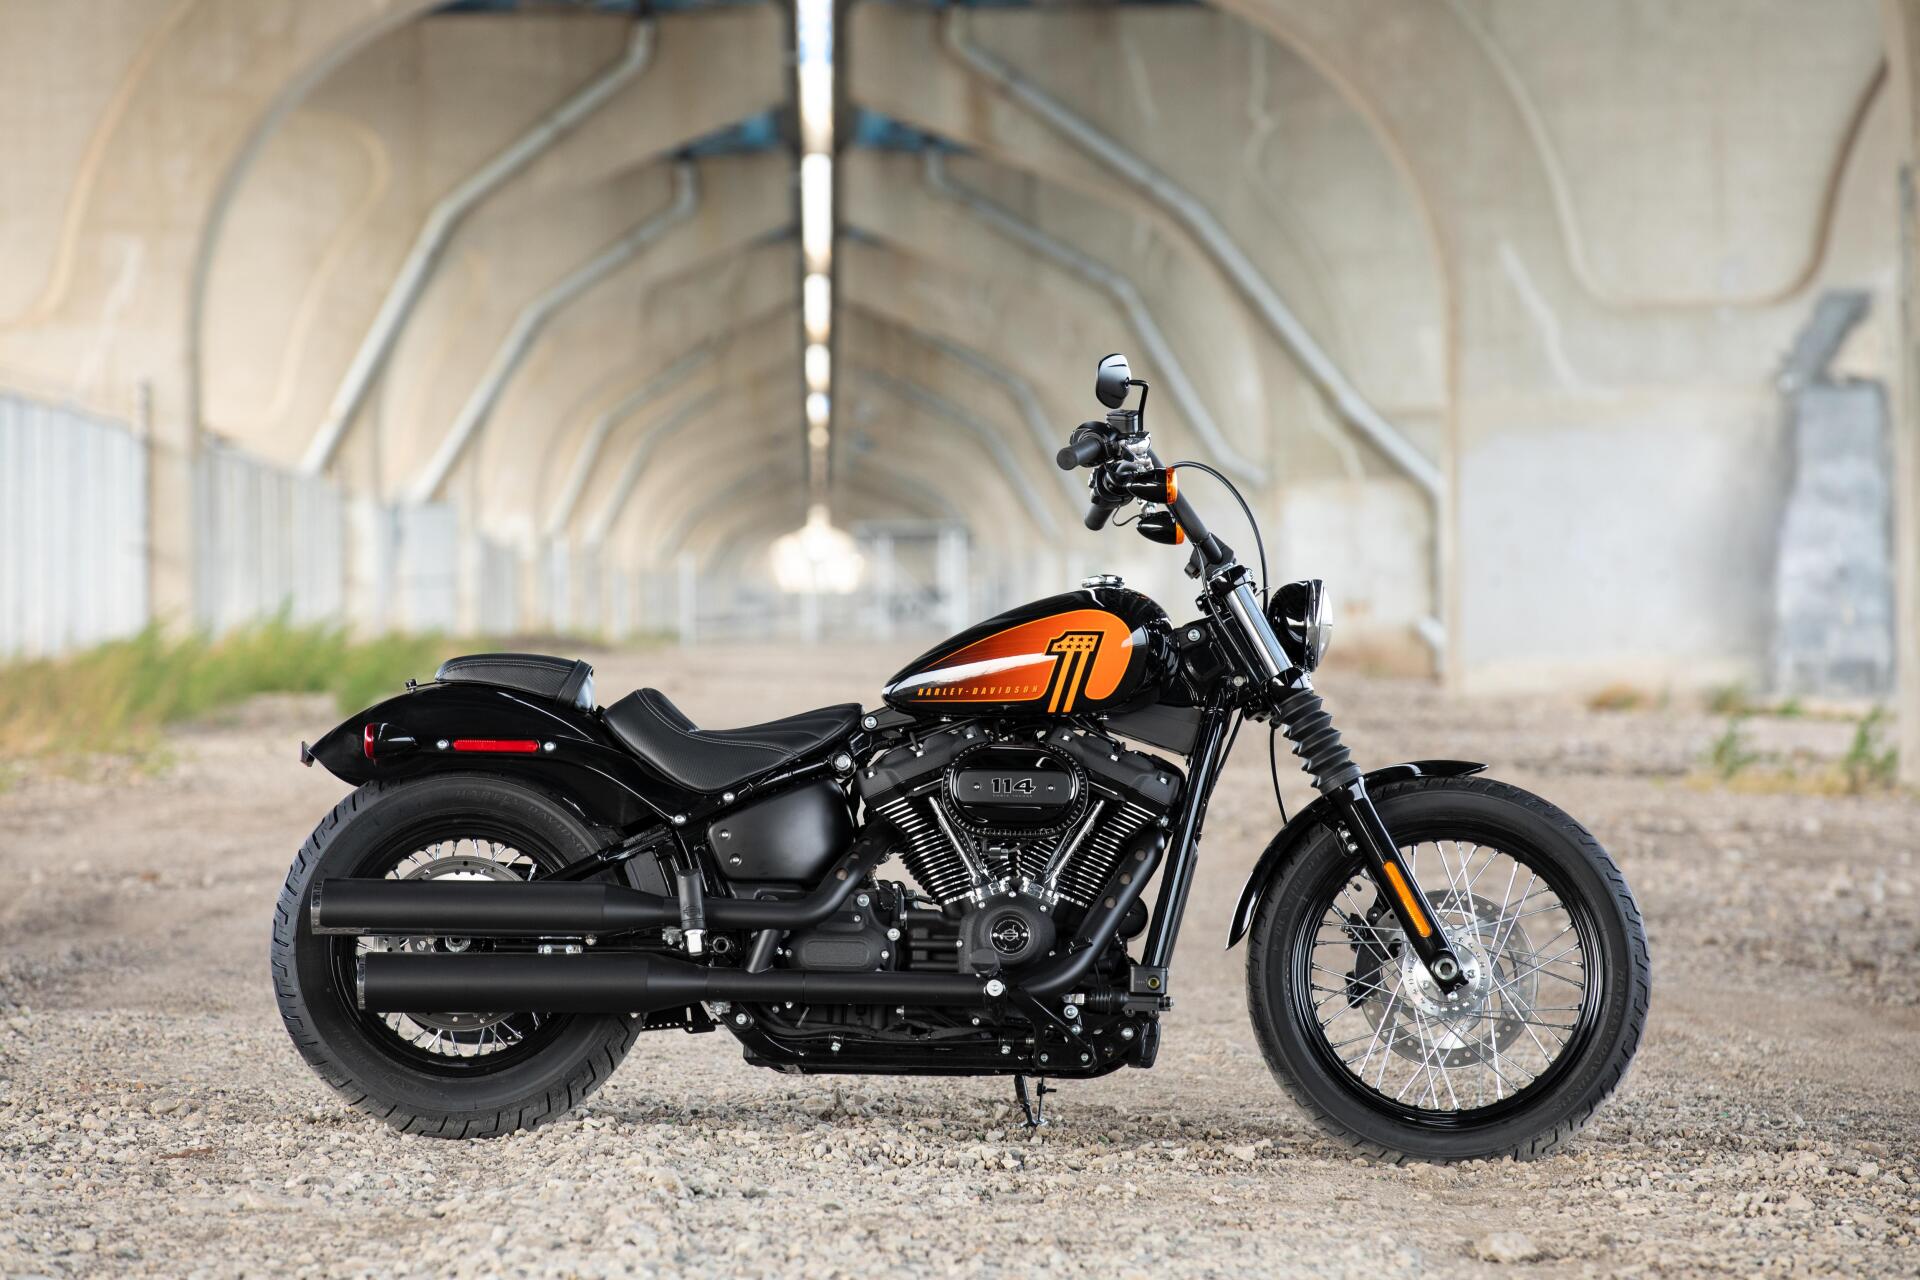 Die 2021er Harley Davidson Bikes Schuren Die Leidenschaft Fur Abenteuer Und Freiheit